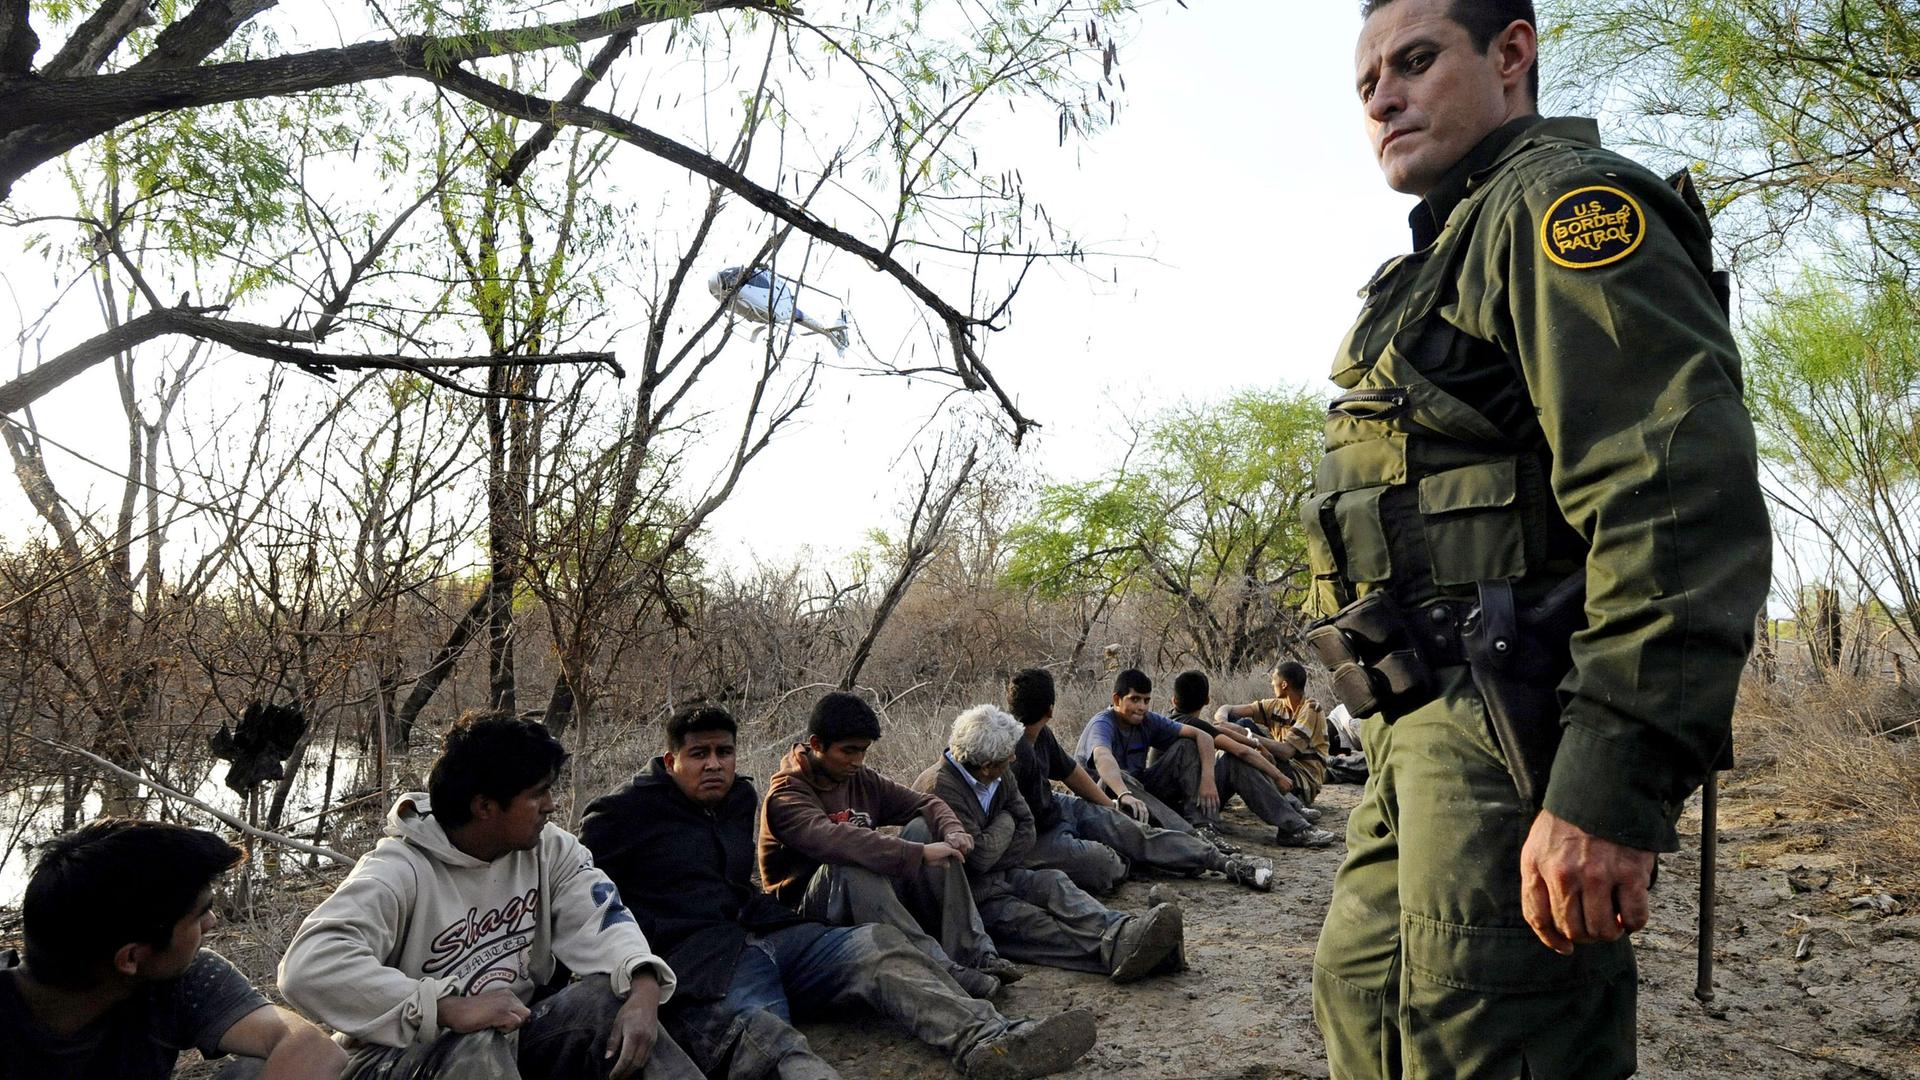 Ein Grenzschützer in Uniform steht vor einer Reihe Menschen, die am Boden sitzen. Im Hintergrund ist Wasser zu sehen.